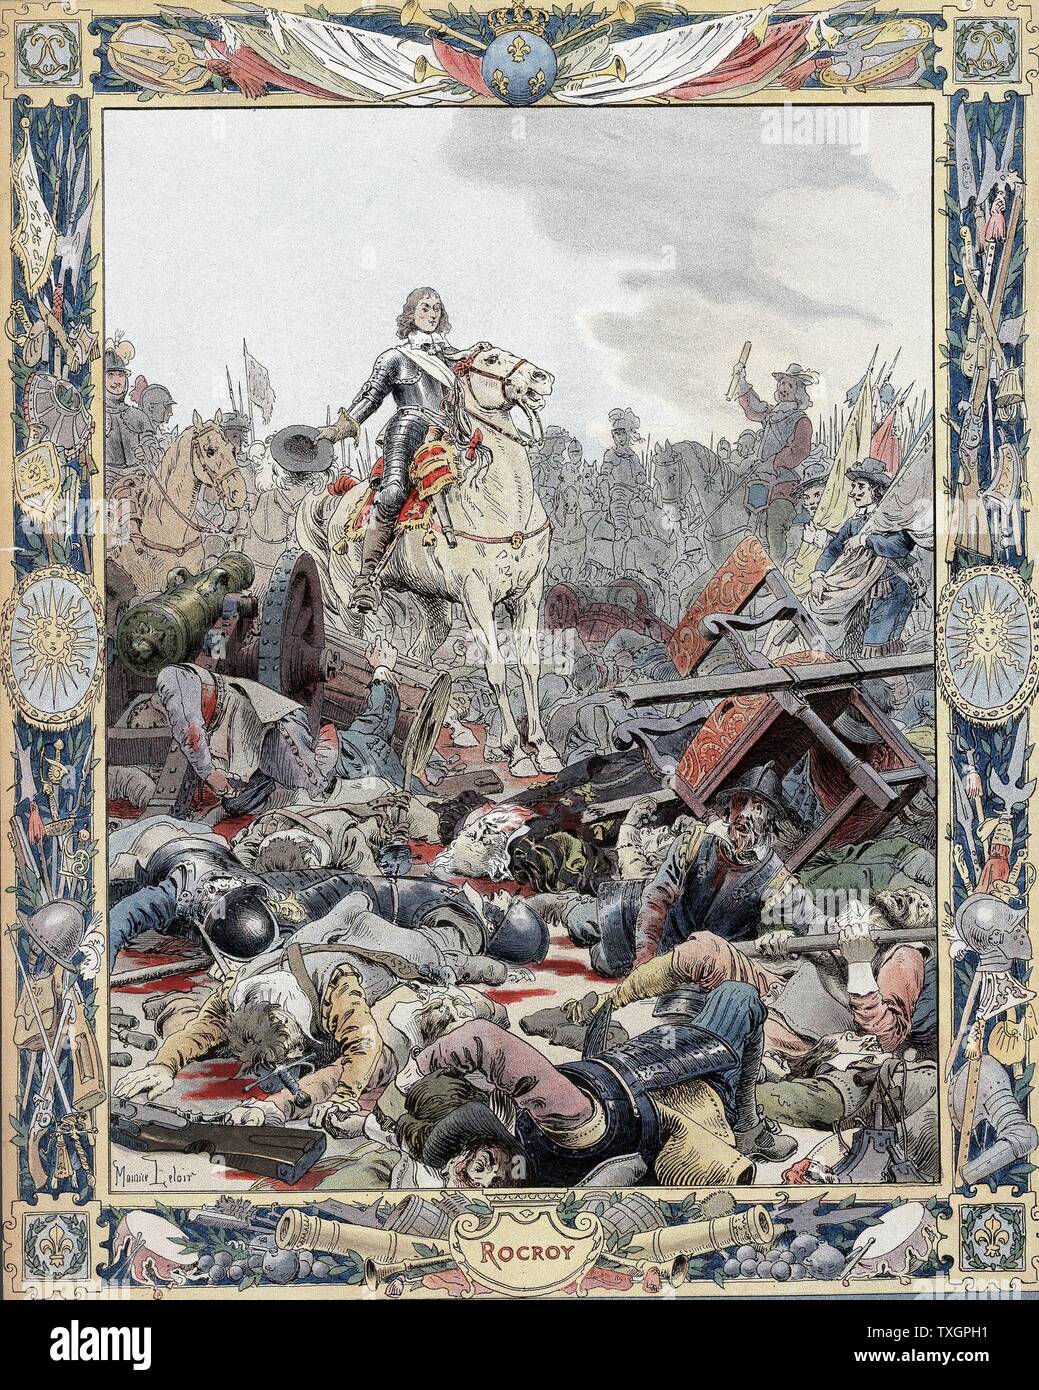 Guerra de Treinta Años: La Batalla de Rocroi (Rocroy), 19 de mayo de 1643, el español derrotado por franceses bajo el Duc d'Enghien, Príncipe de Conde (1621-1686), conocido como el Gran Conde. Litografía Foto de stock